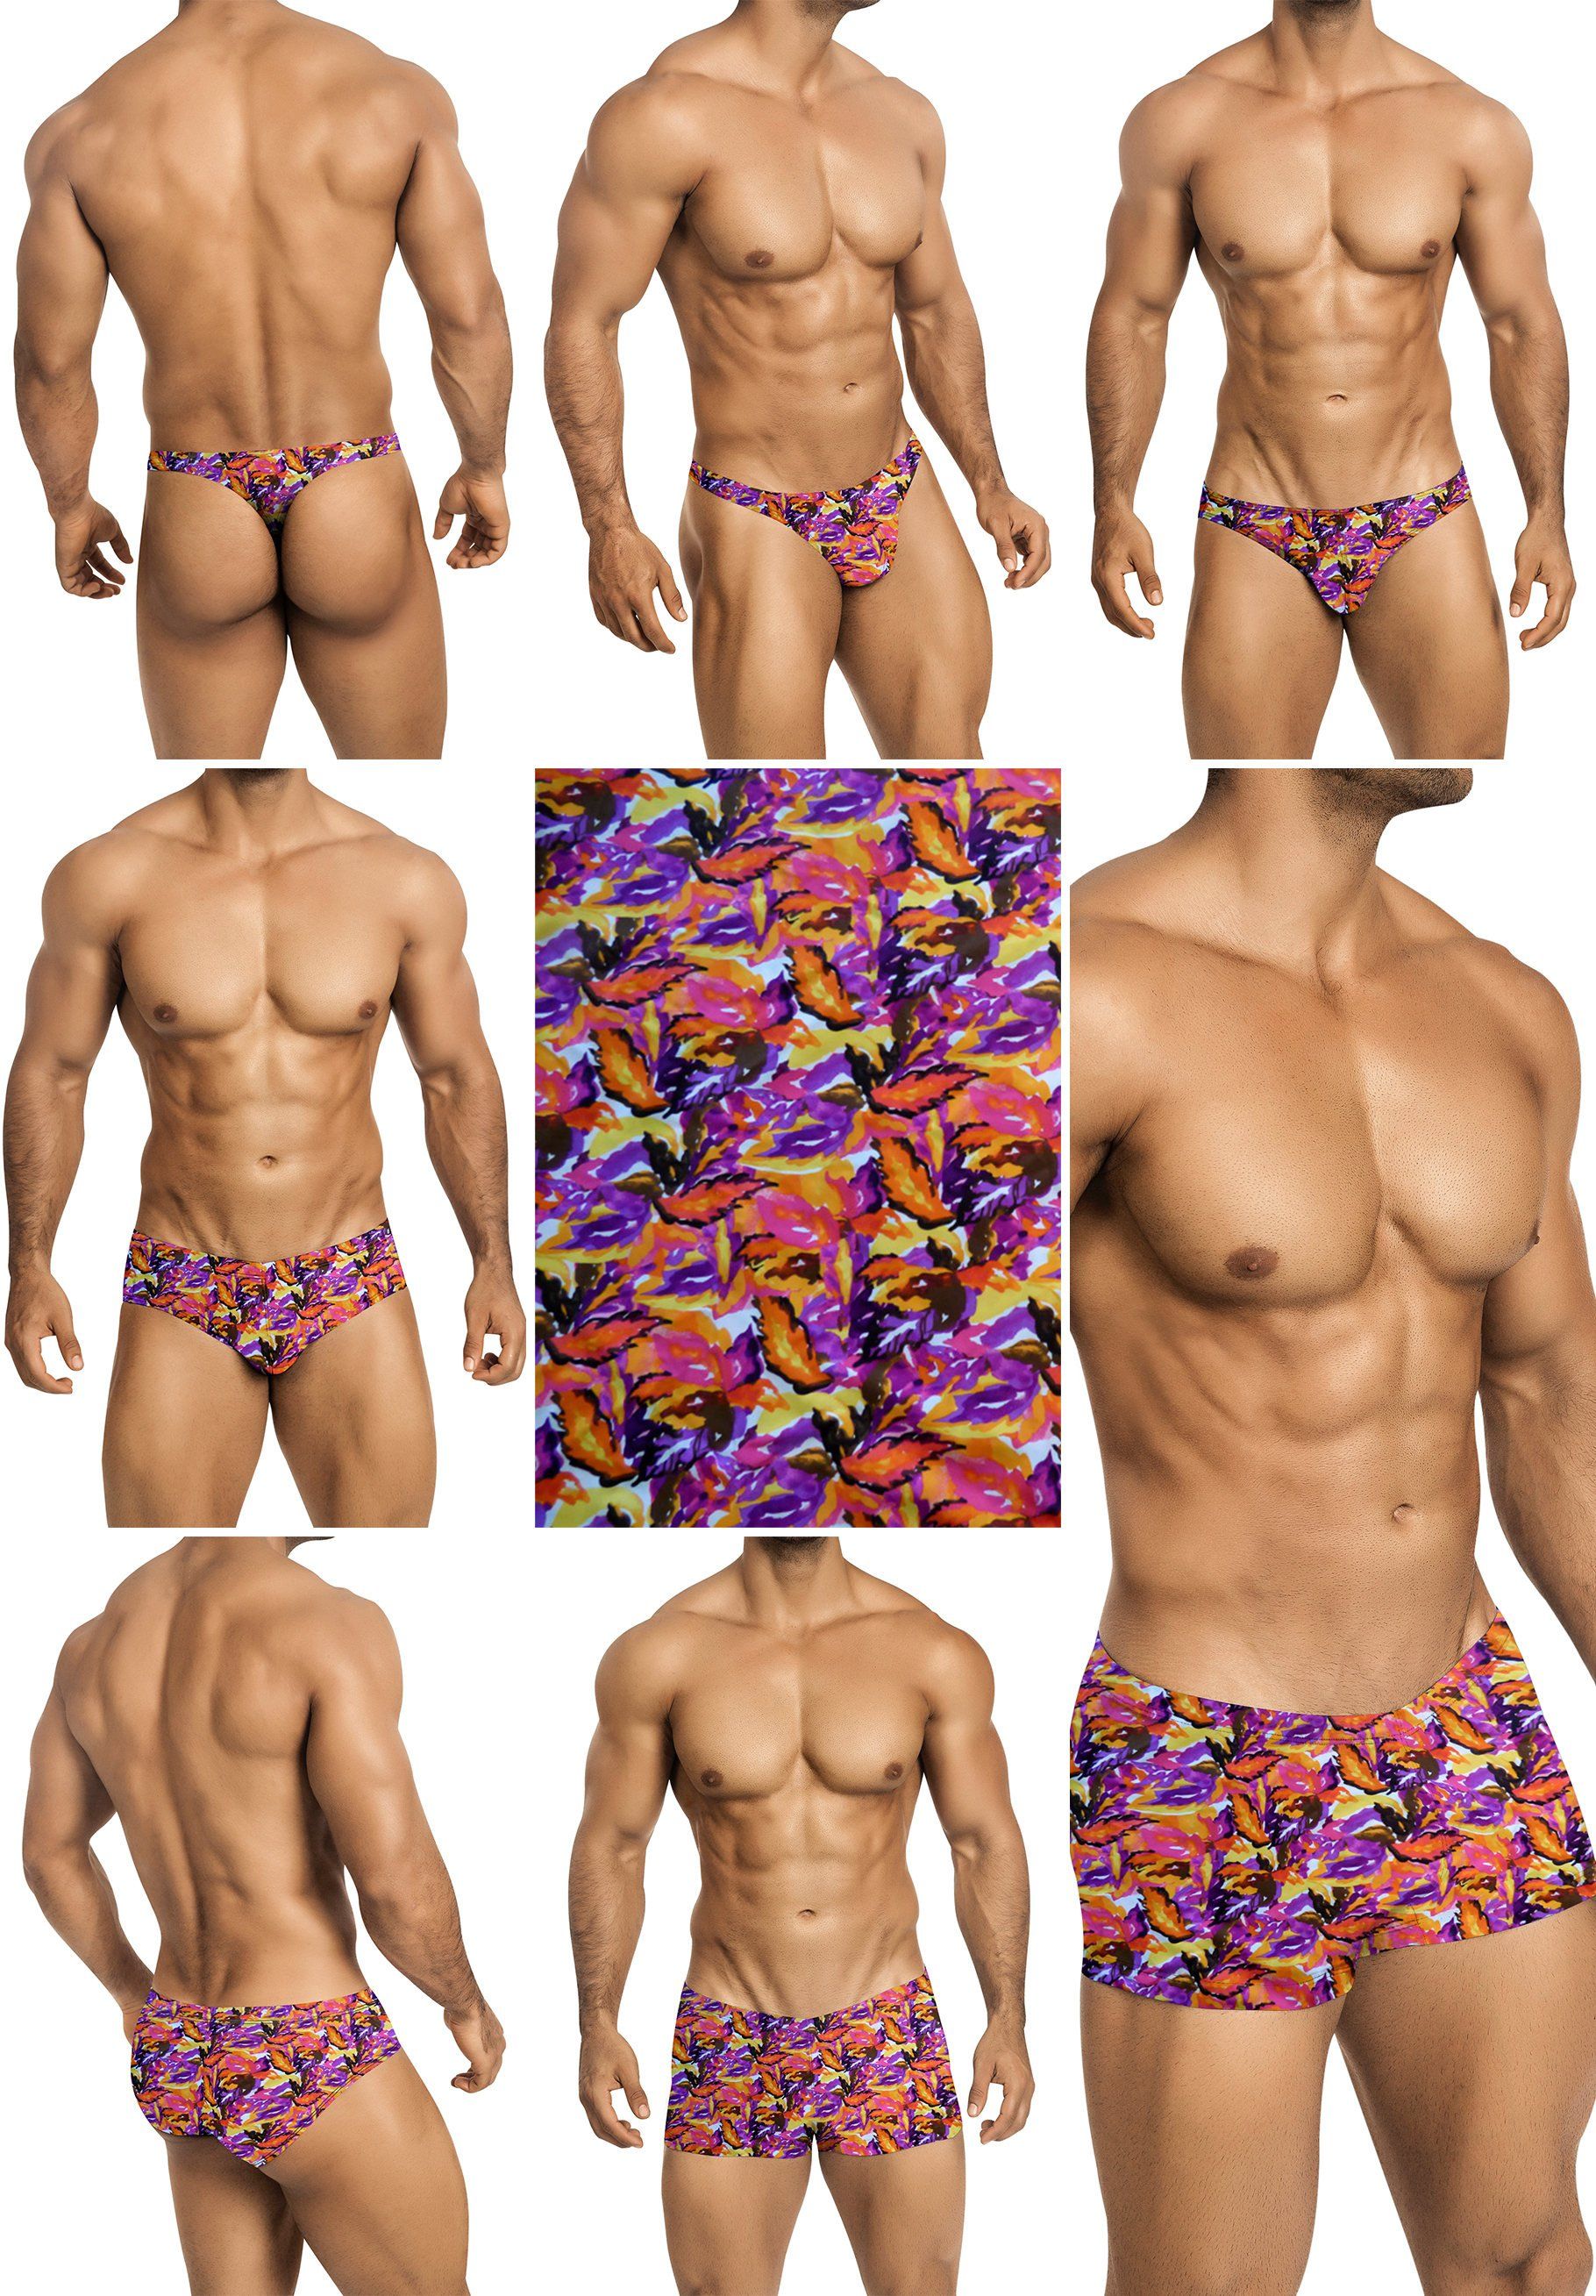 Combo reccomend Erotic male bikini gallery